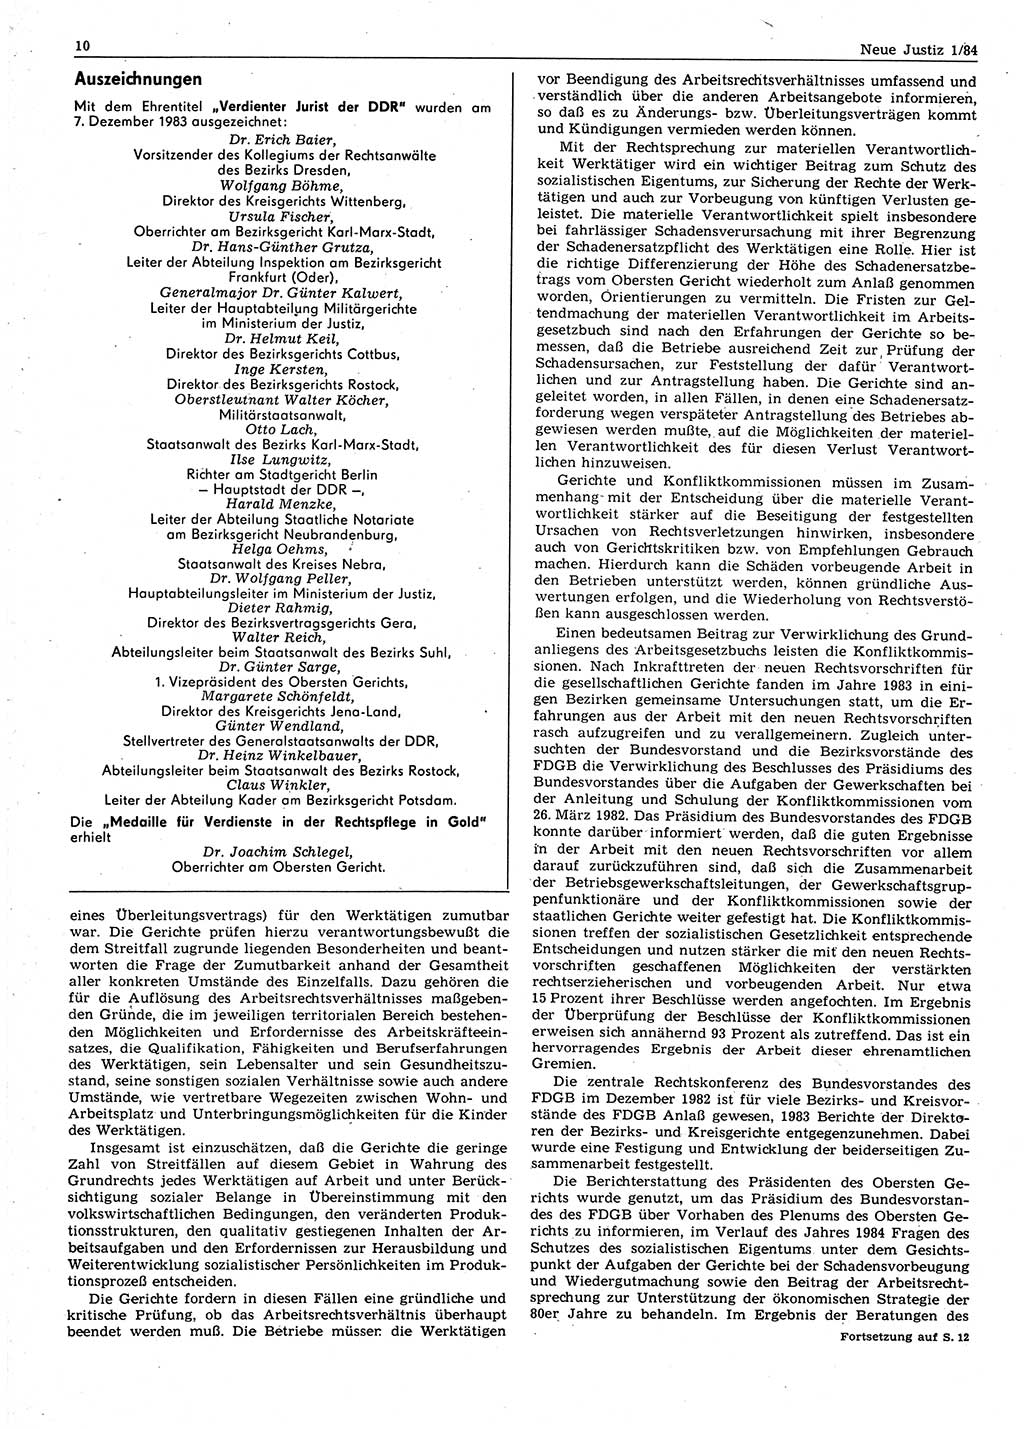 Neue Justiz (NJ), Zeitschrift für sozialistisches Recht und Gesetzlichkeit [Deutsche Demokratische Republik (DDR)], 38. Jahrgang 1984, Seite 10 (NJ DDR 1984, S. 10)